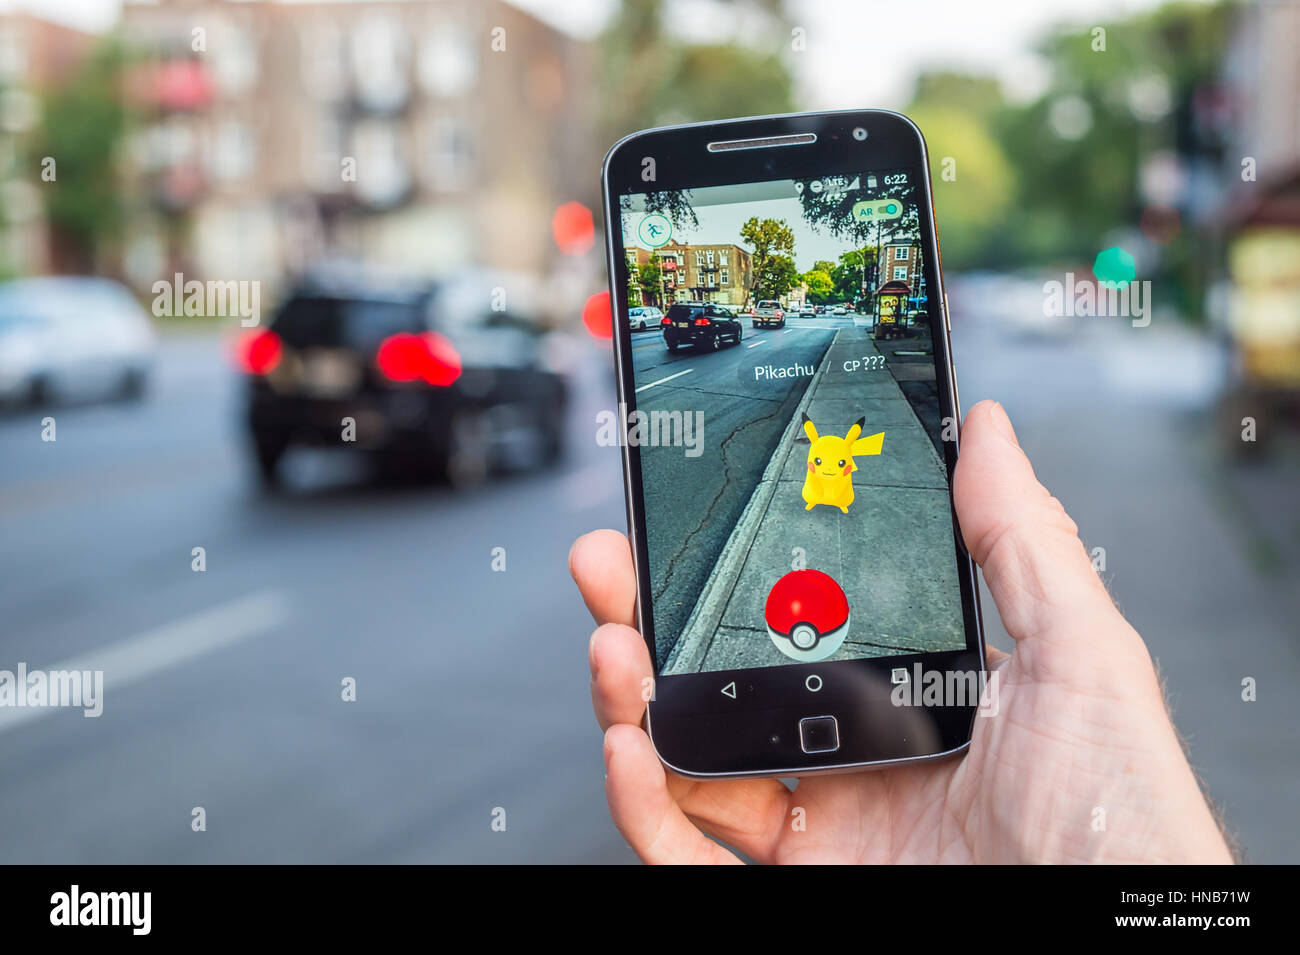 Montréal, CA - le 11 août 2016 : Libre d'un homme jouant de Pokemon rendez sur un téléphone intelligent. Pokemon Go est un jeu de réalité virtuelle sorti en juillet 2016. Banque D'Images